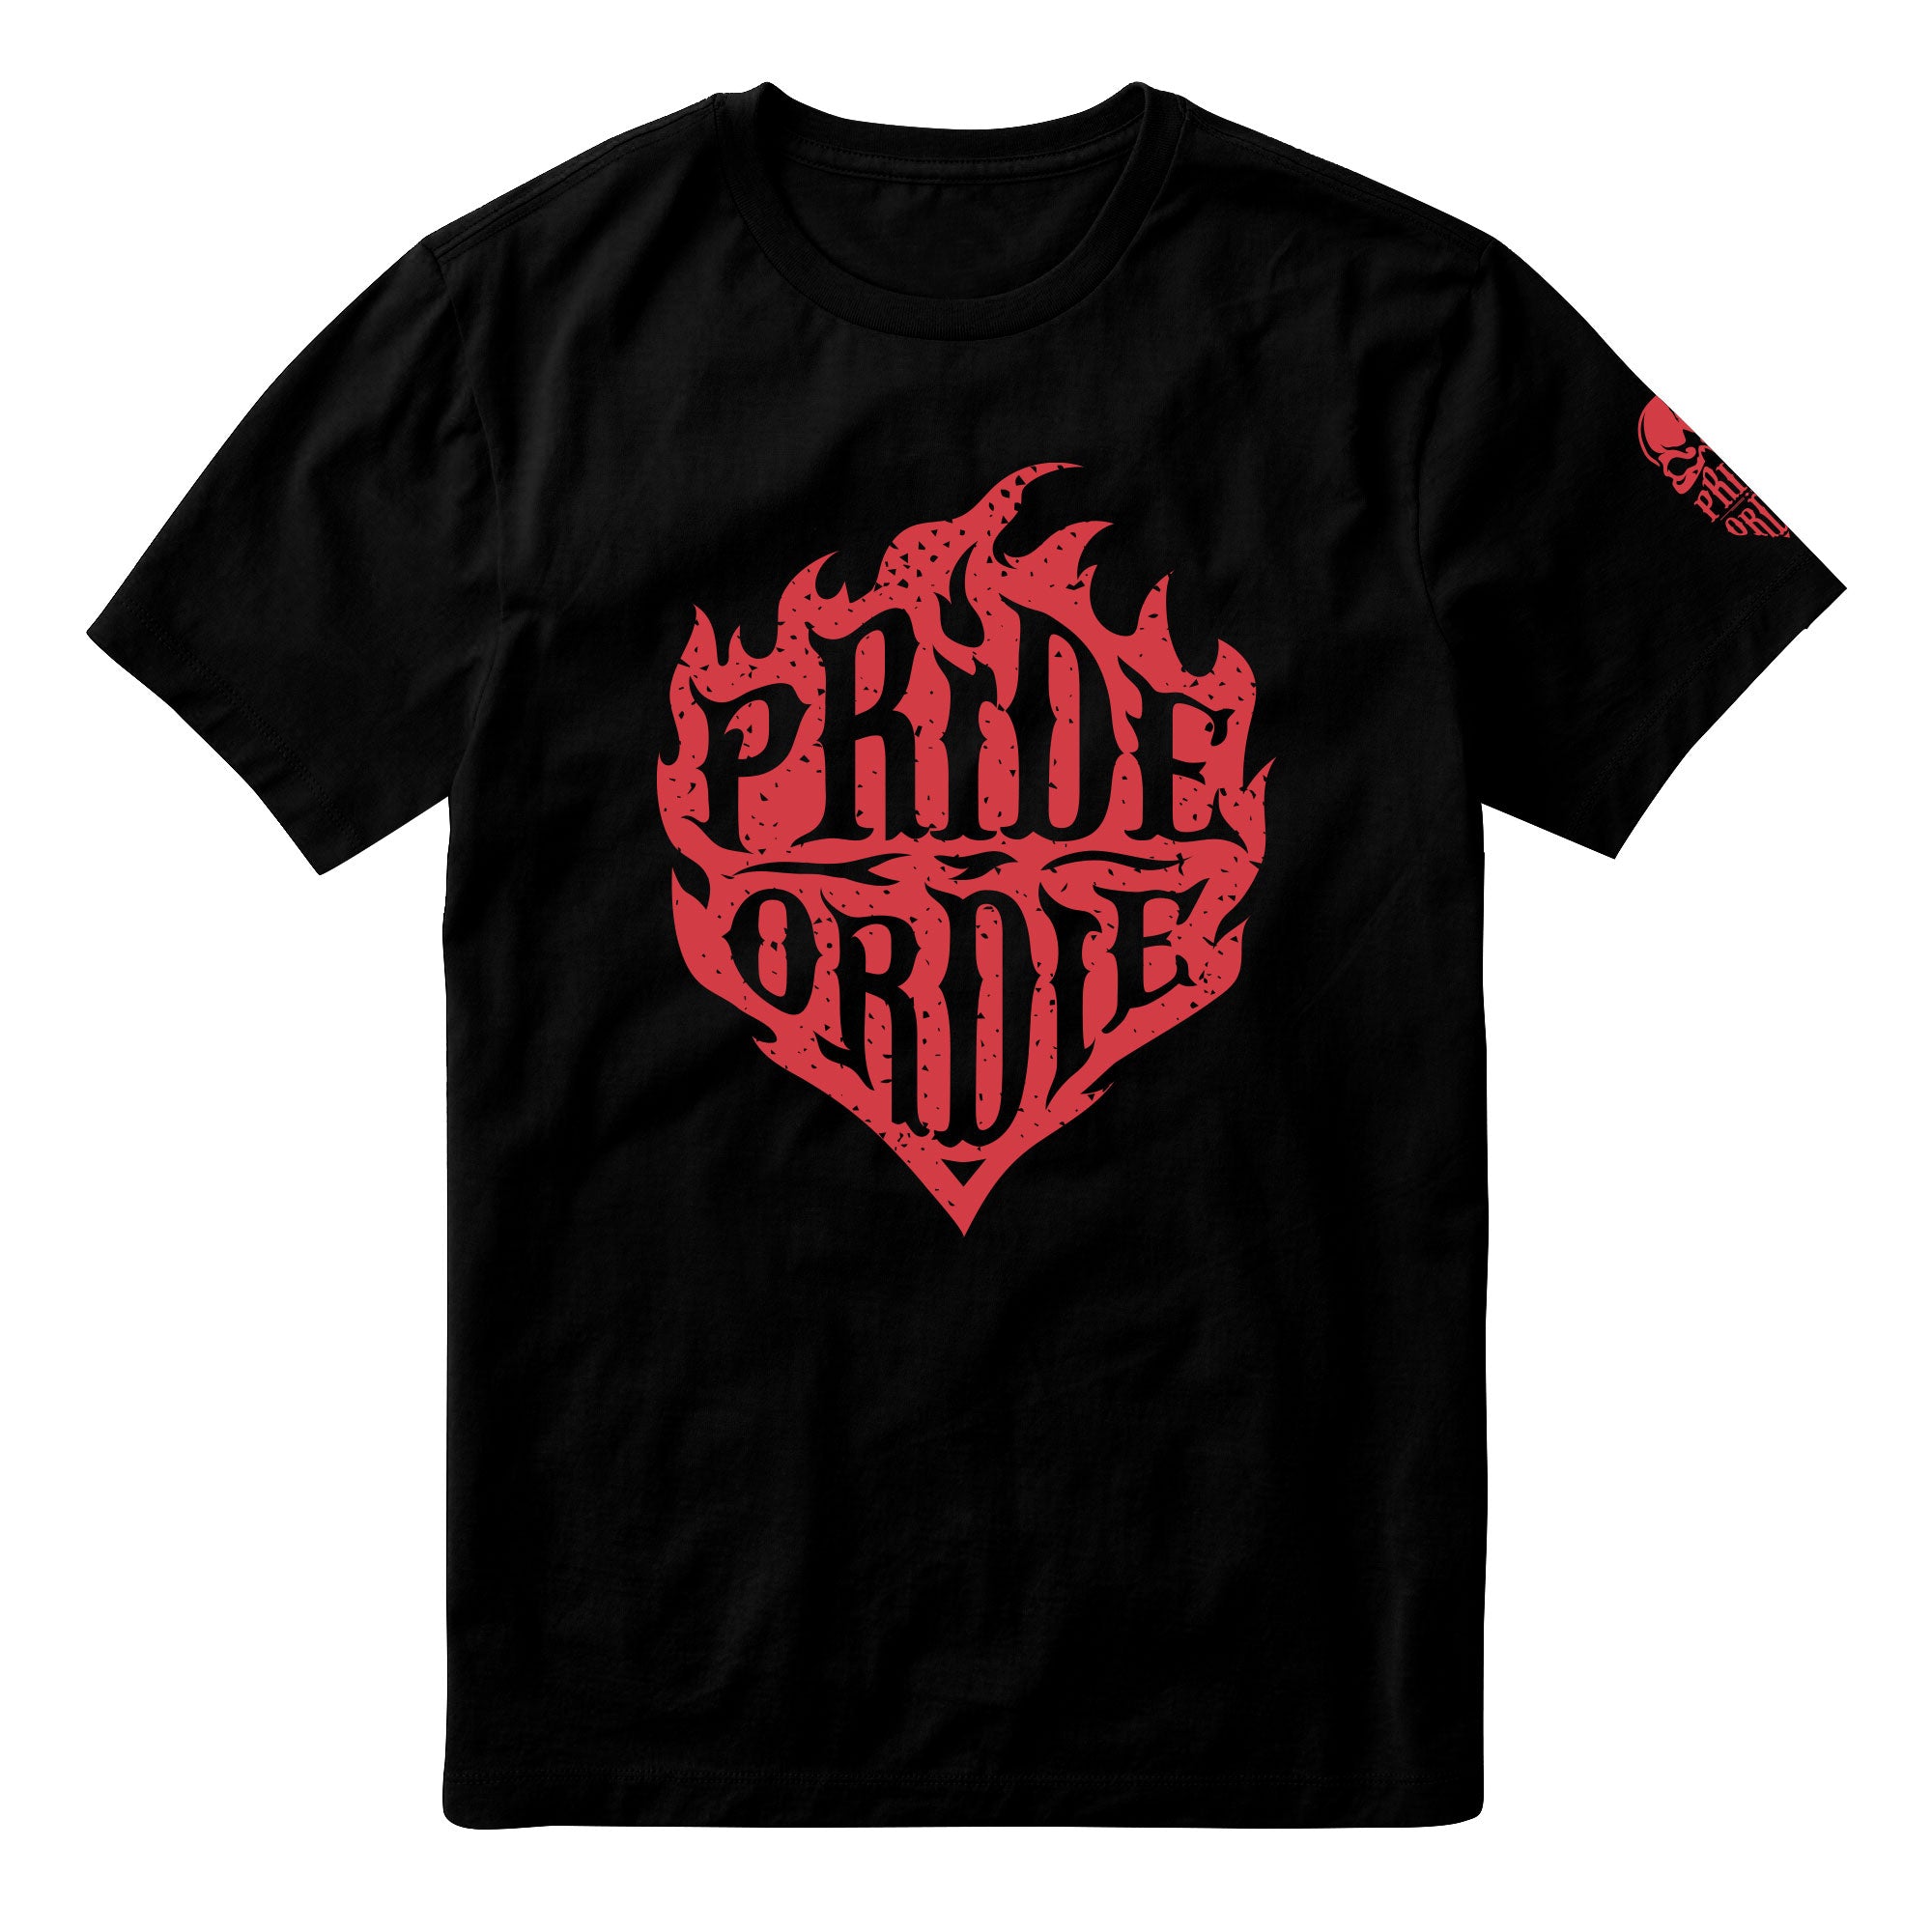 T-shirt Pride or Die Reckless Fire